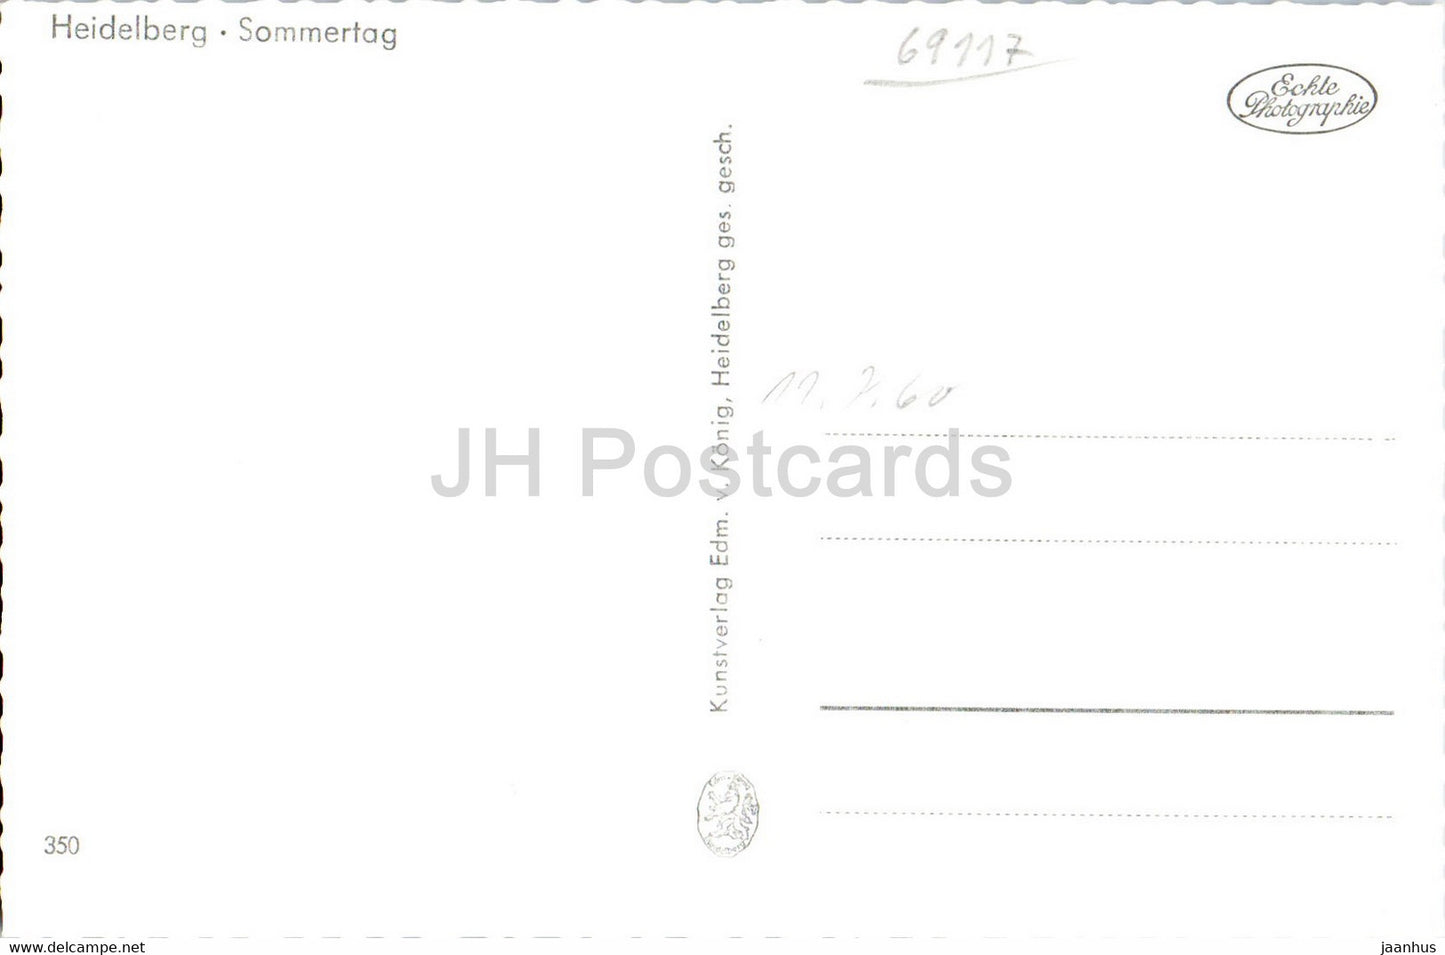 Heidelberg - Sommertag - Schiff - alte Postkarte - Deutschland - unbenutzt